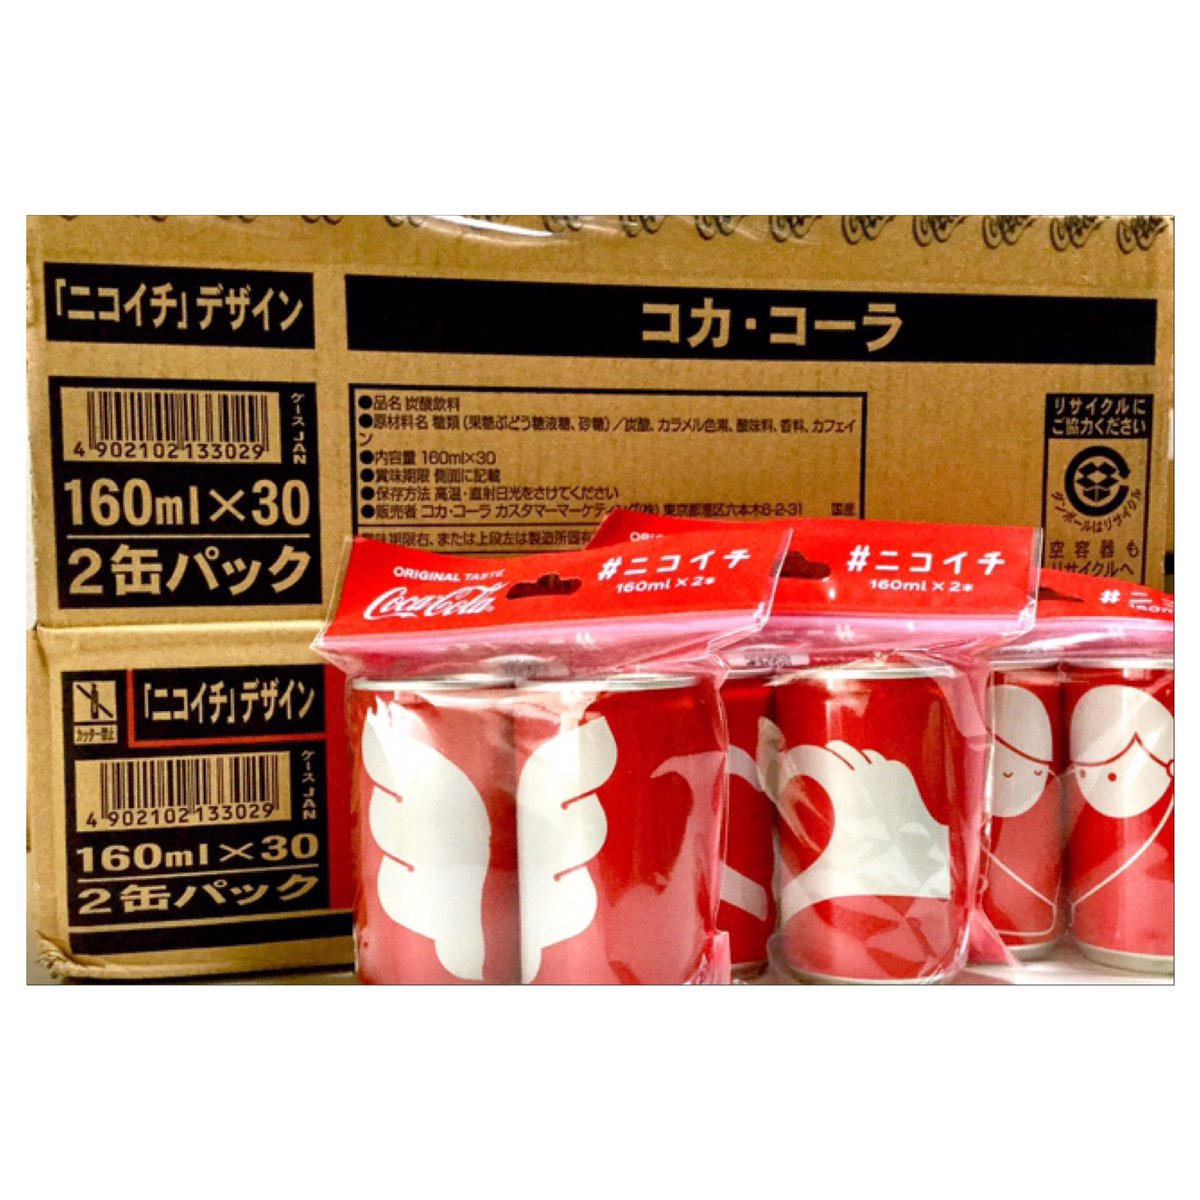 七砂 コカ コーラ ニコイチ デザイン缶 到着 2本で1セットのデザイン 3絵柄